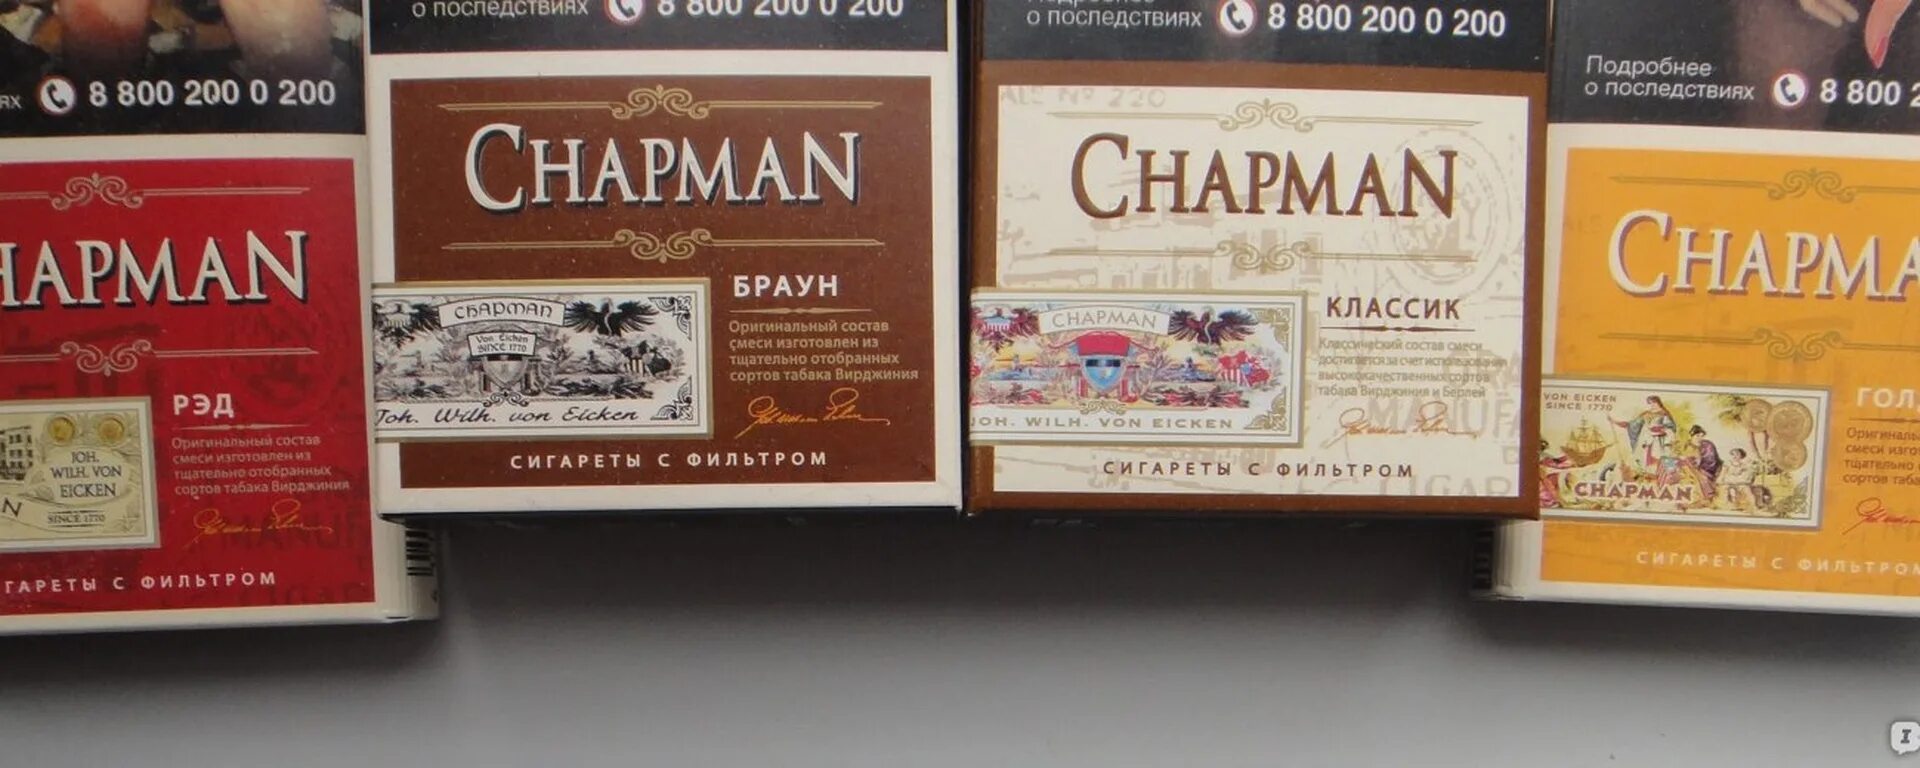 Виды сигарет чапман. Чапман сигареты черри. Чапман Браун сигареты вкус. Chapman сигареты вкусы Браун. Chapman сигареты классика.